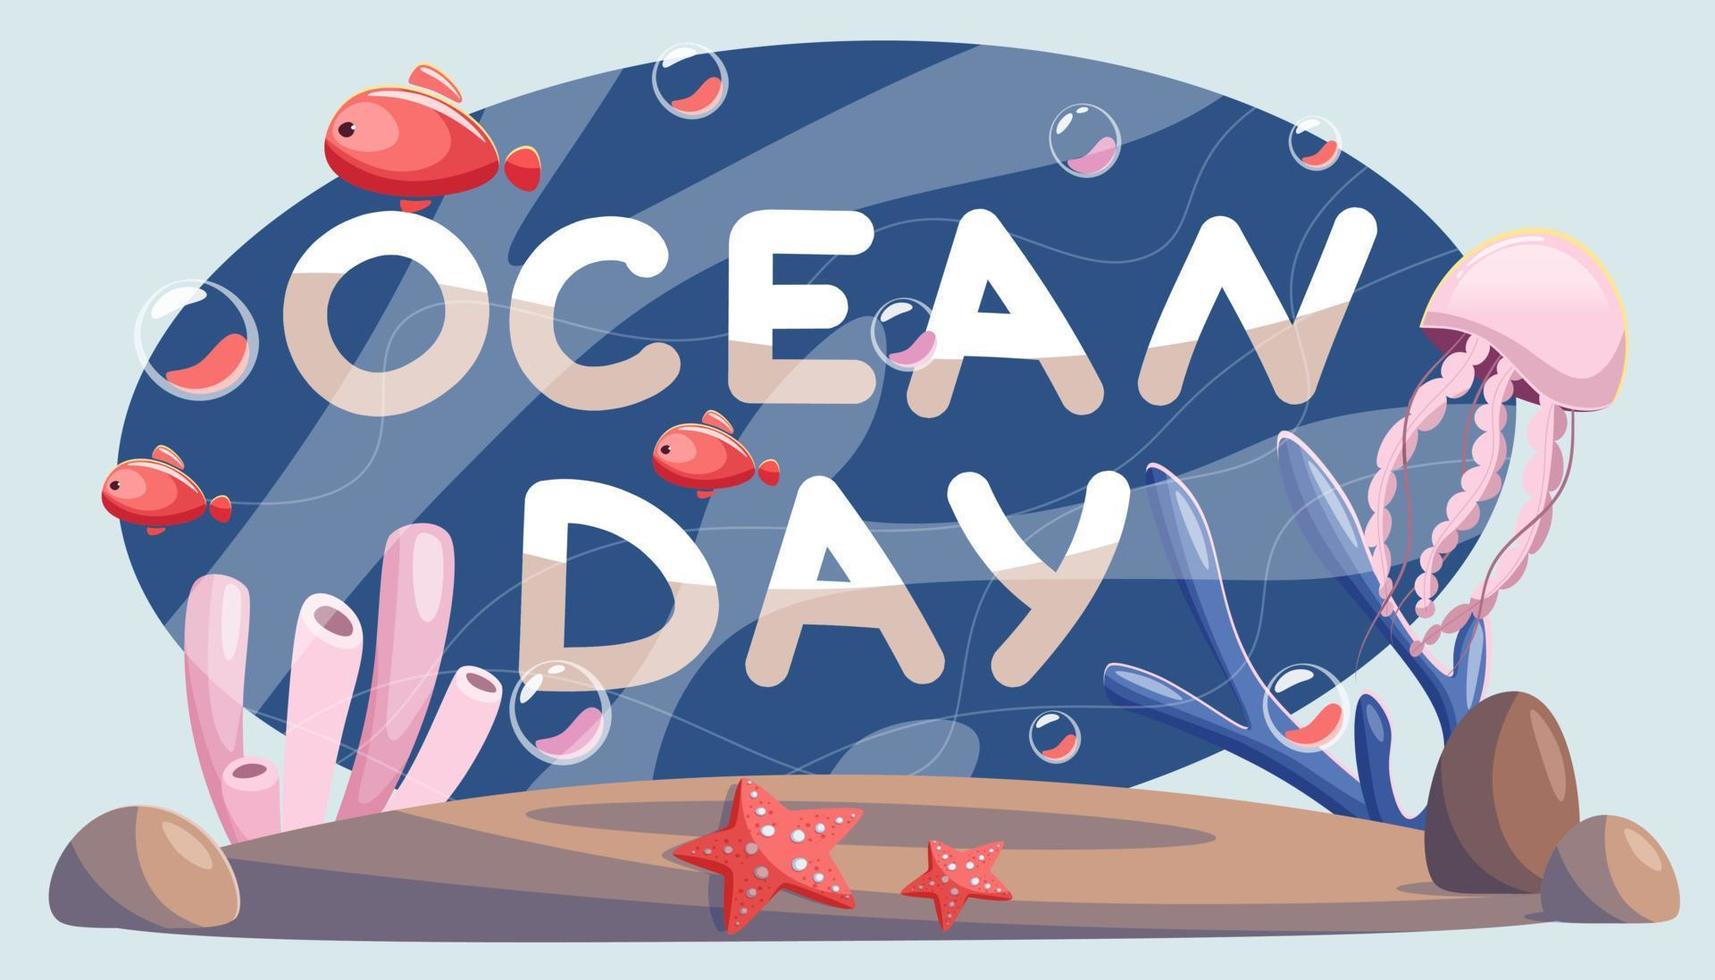 monde océan journée est une global fête sur juin 8, avec des centaines de événements autour le monde dévoué à notre océan. océan journée caractères, petit poisson, méduse, étoile de mer et coraux. vecteur